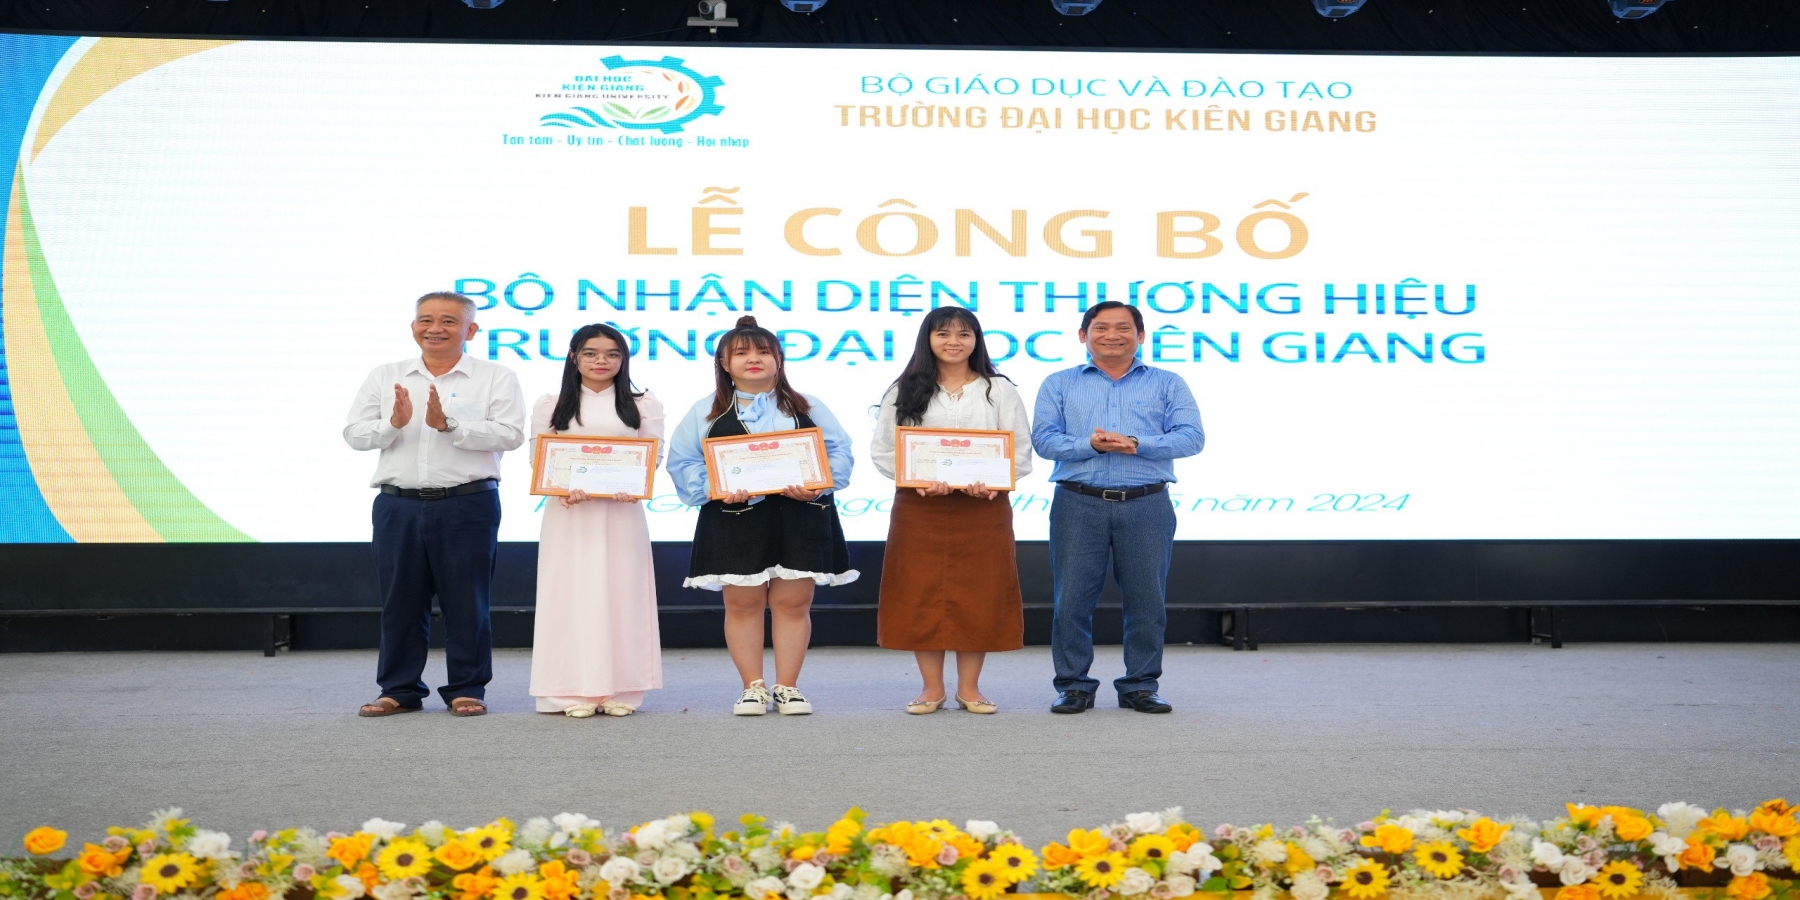 Trường Đại học Kiên Giang công bố bộ nhận dạng thương hiệu